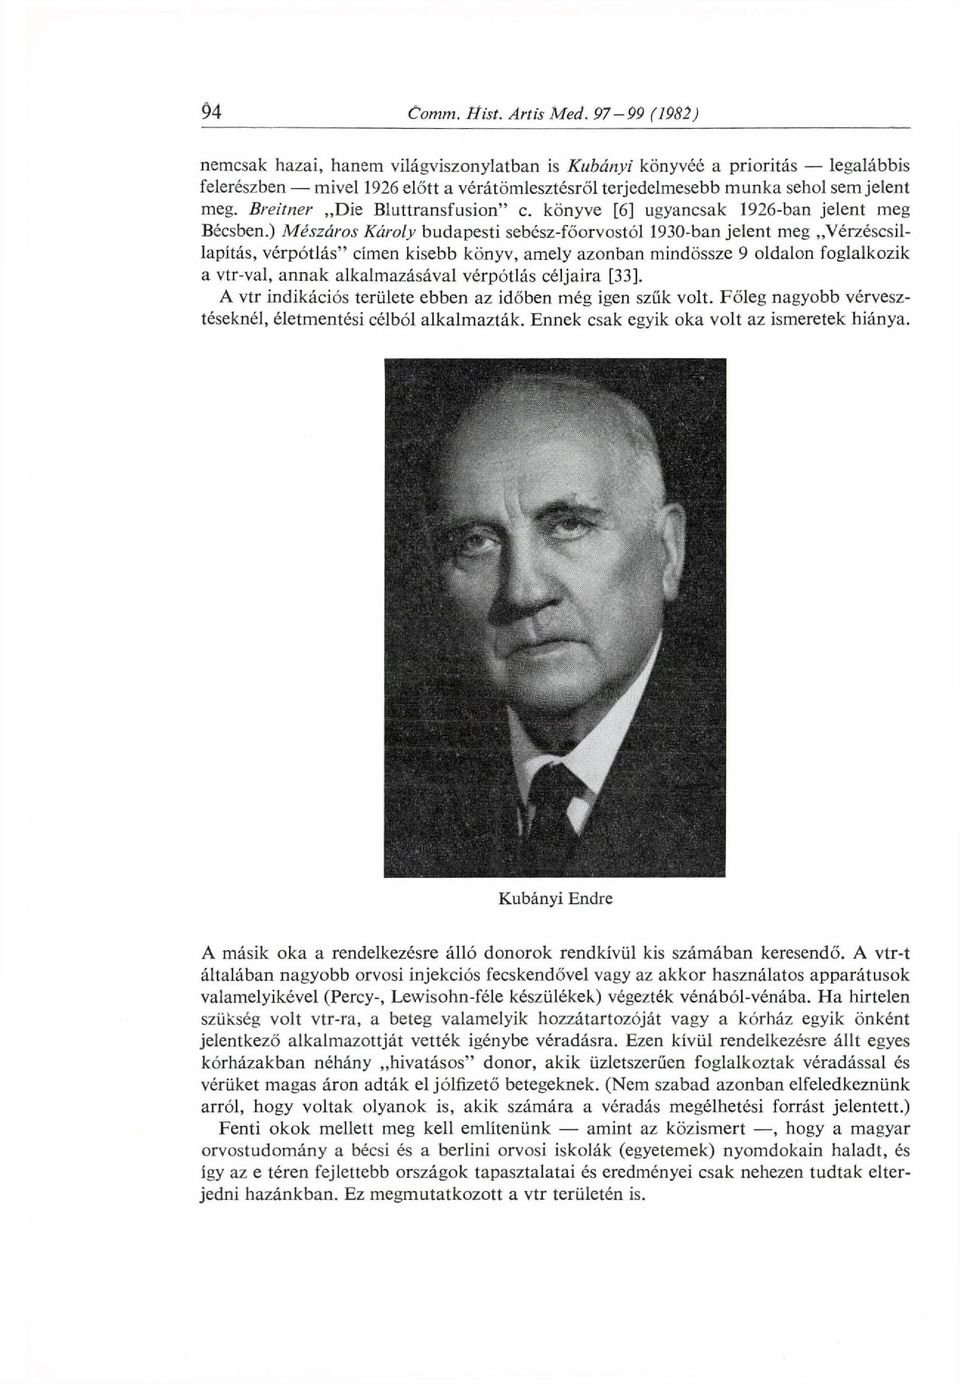 ) Mészáros Károly budapesti sebész-főorvostól 1930-ban jelent meg Vérzéscsillapítás, vérpótlás" címen kisebb könyv, amely azonban mindössze 9 oldalon foglalkozik a vtr-val, annak alkalmazásával